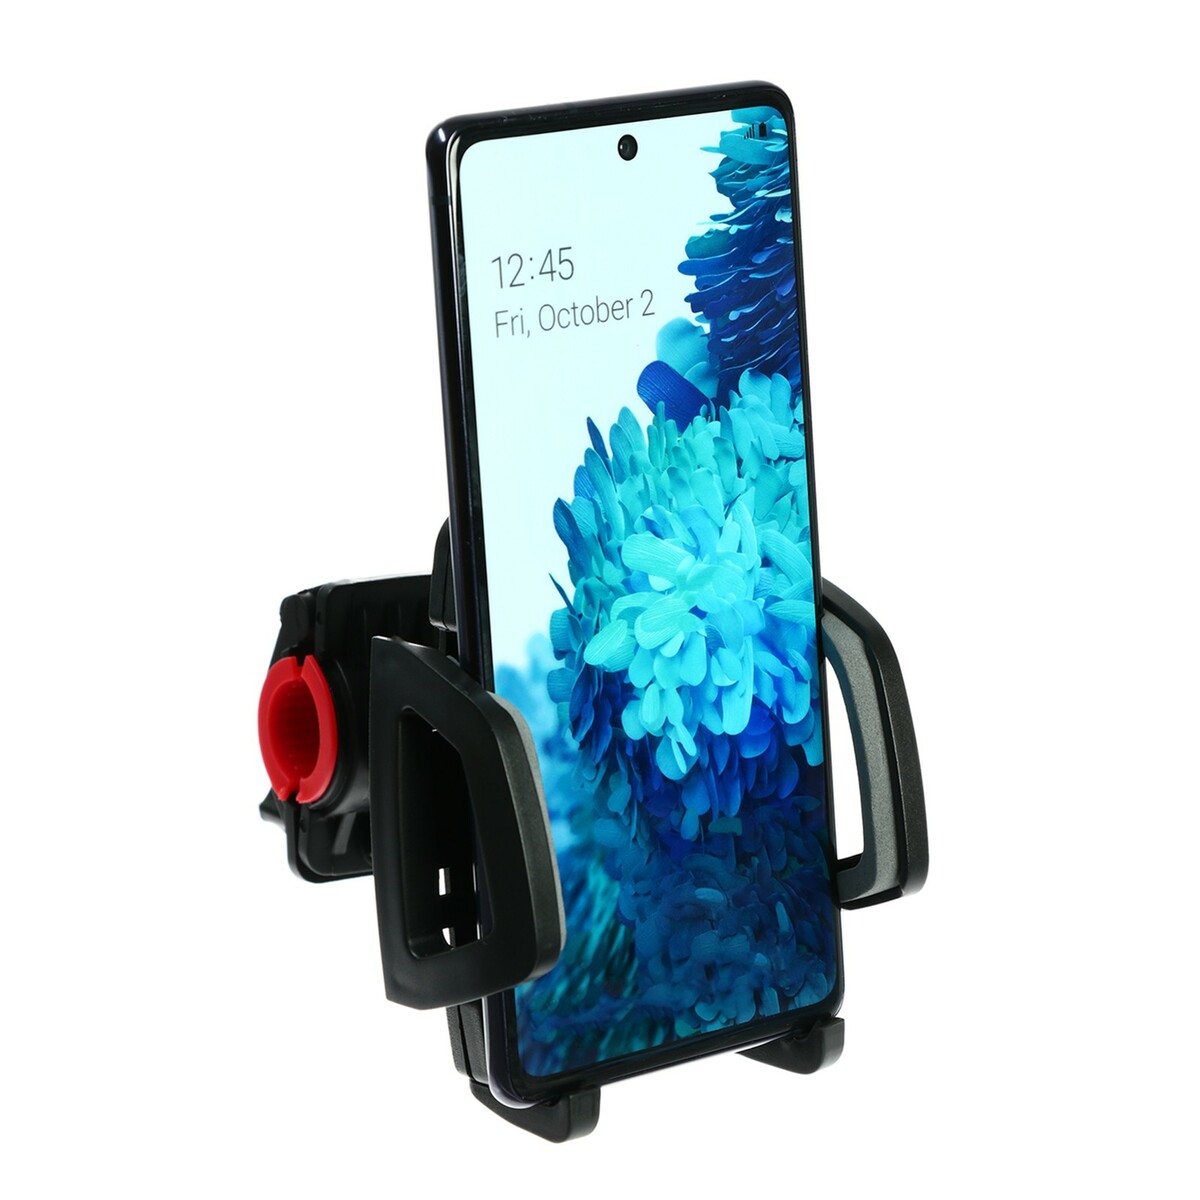 Велосипедный держатель на руль ca14 для смартфона, ширина захвата 50-85 мм, черно-серый держатель red line hol 13 на руль велосипеда универсальный